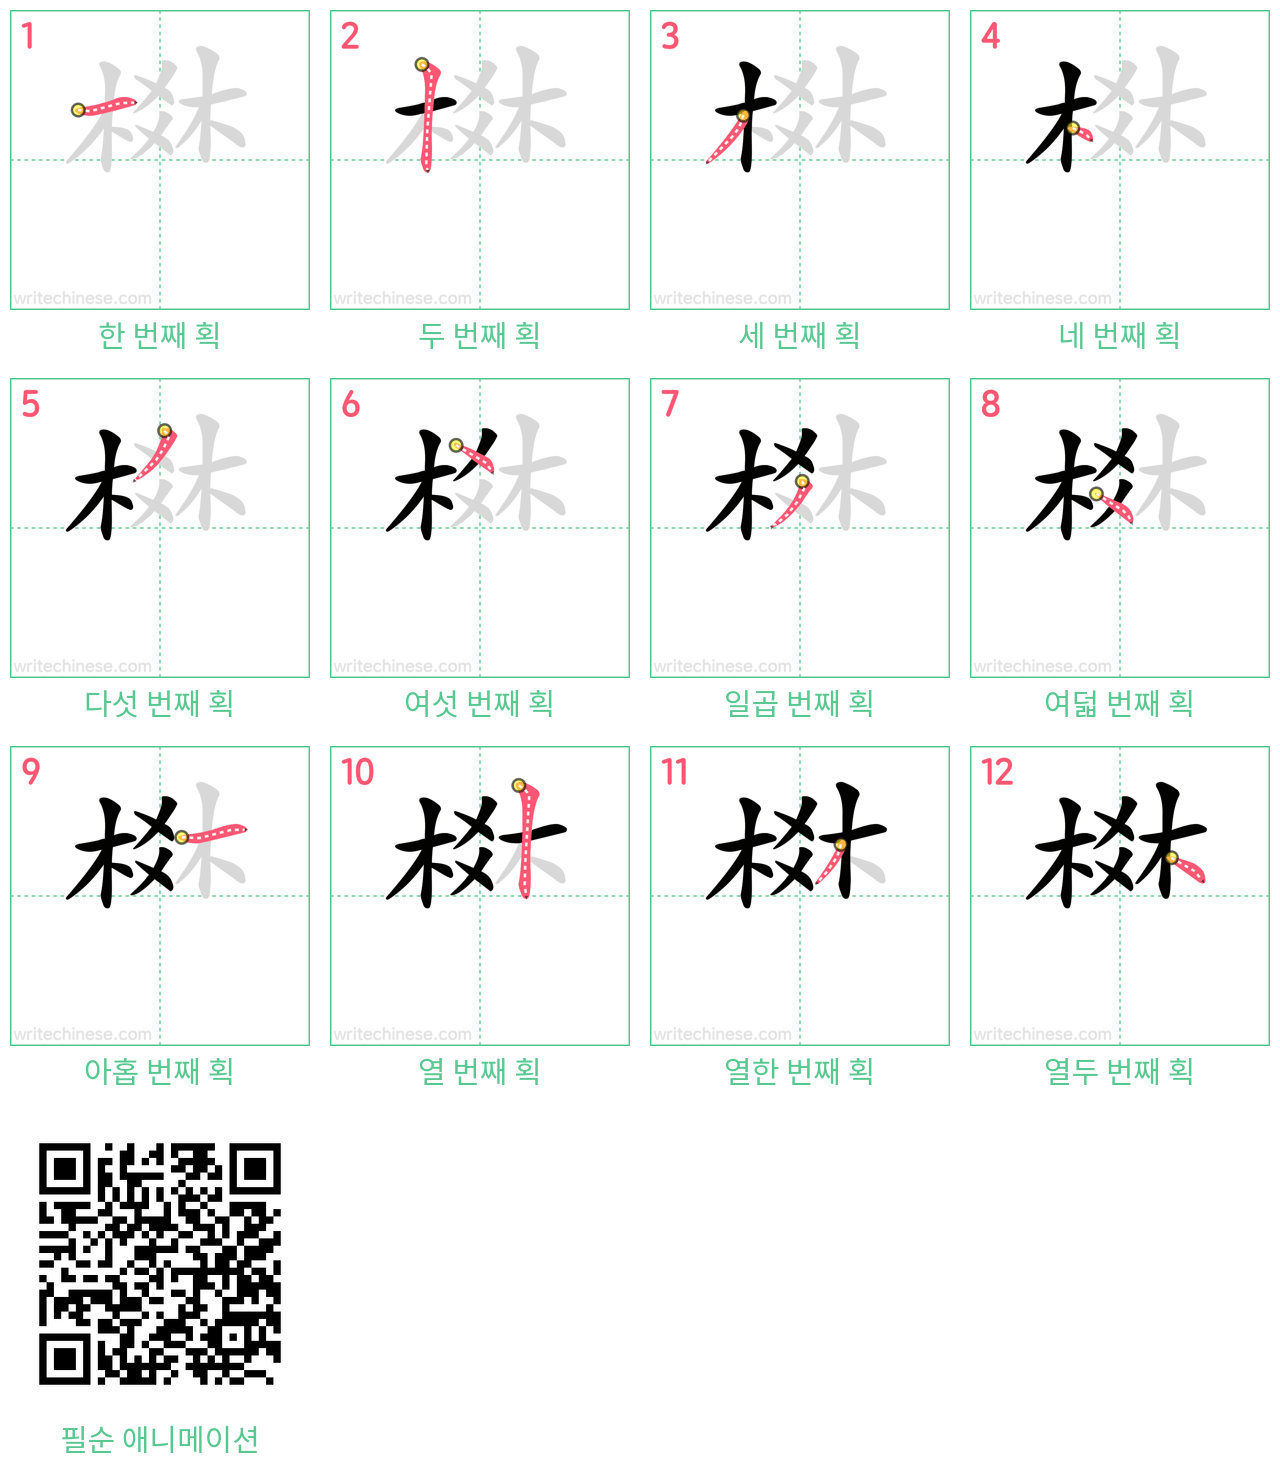 棥 step-by-step stroke order diagrams